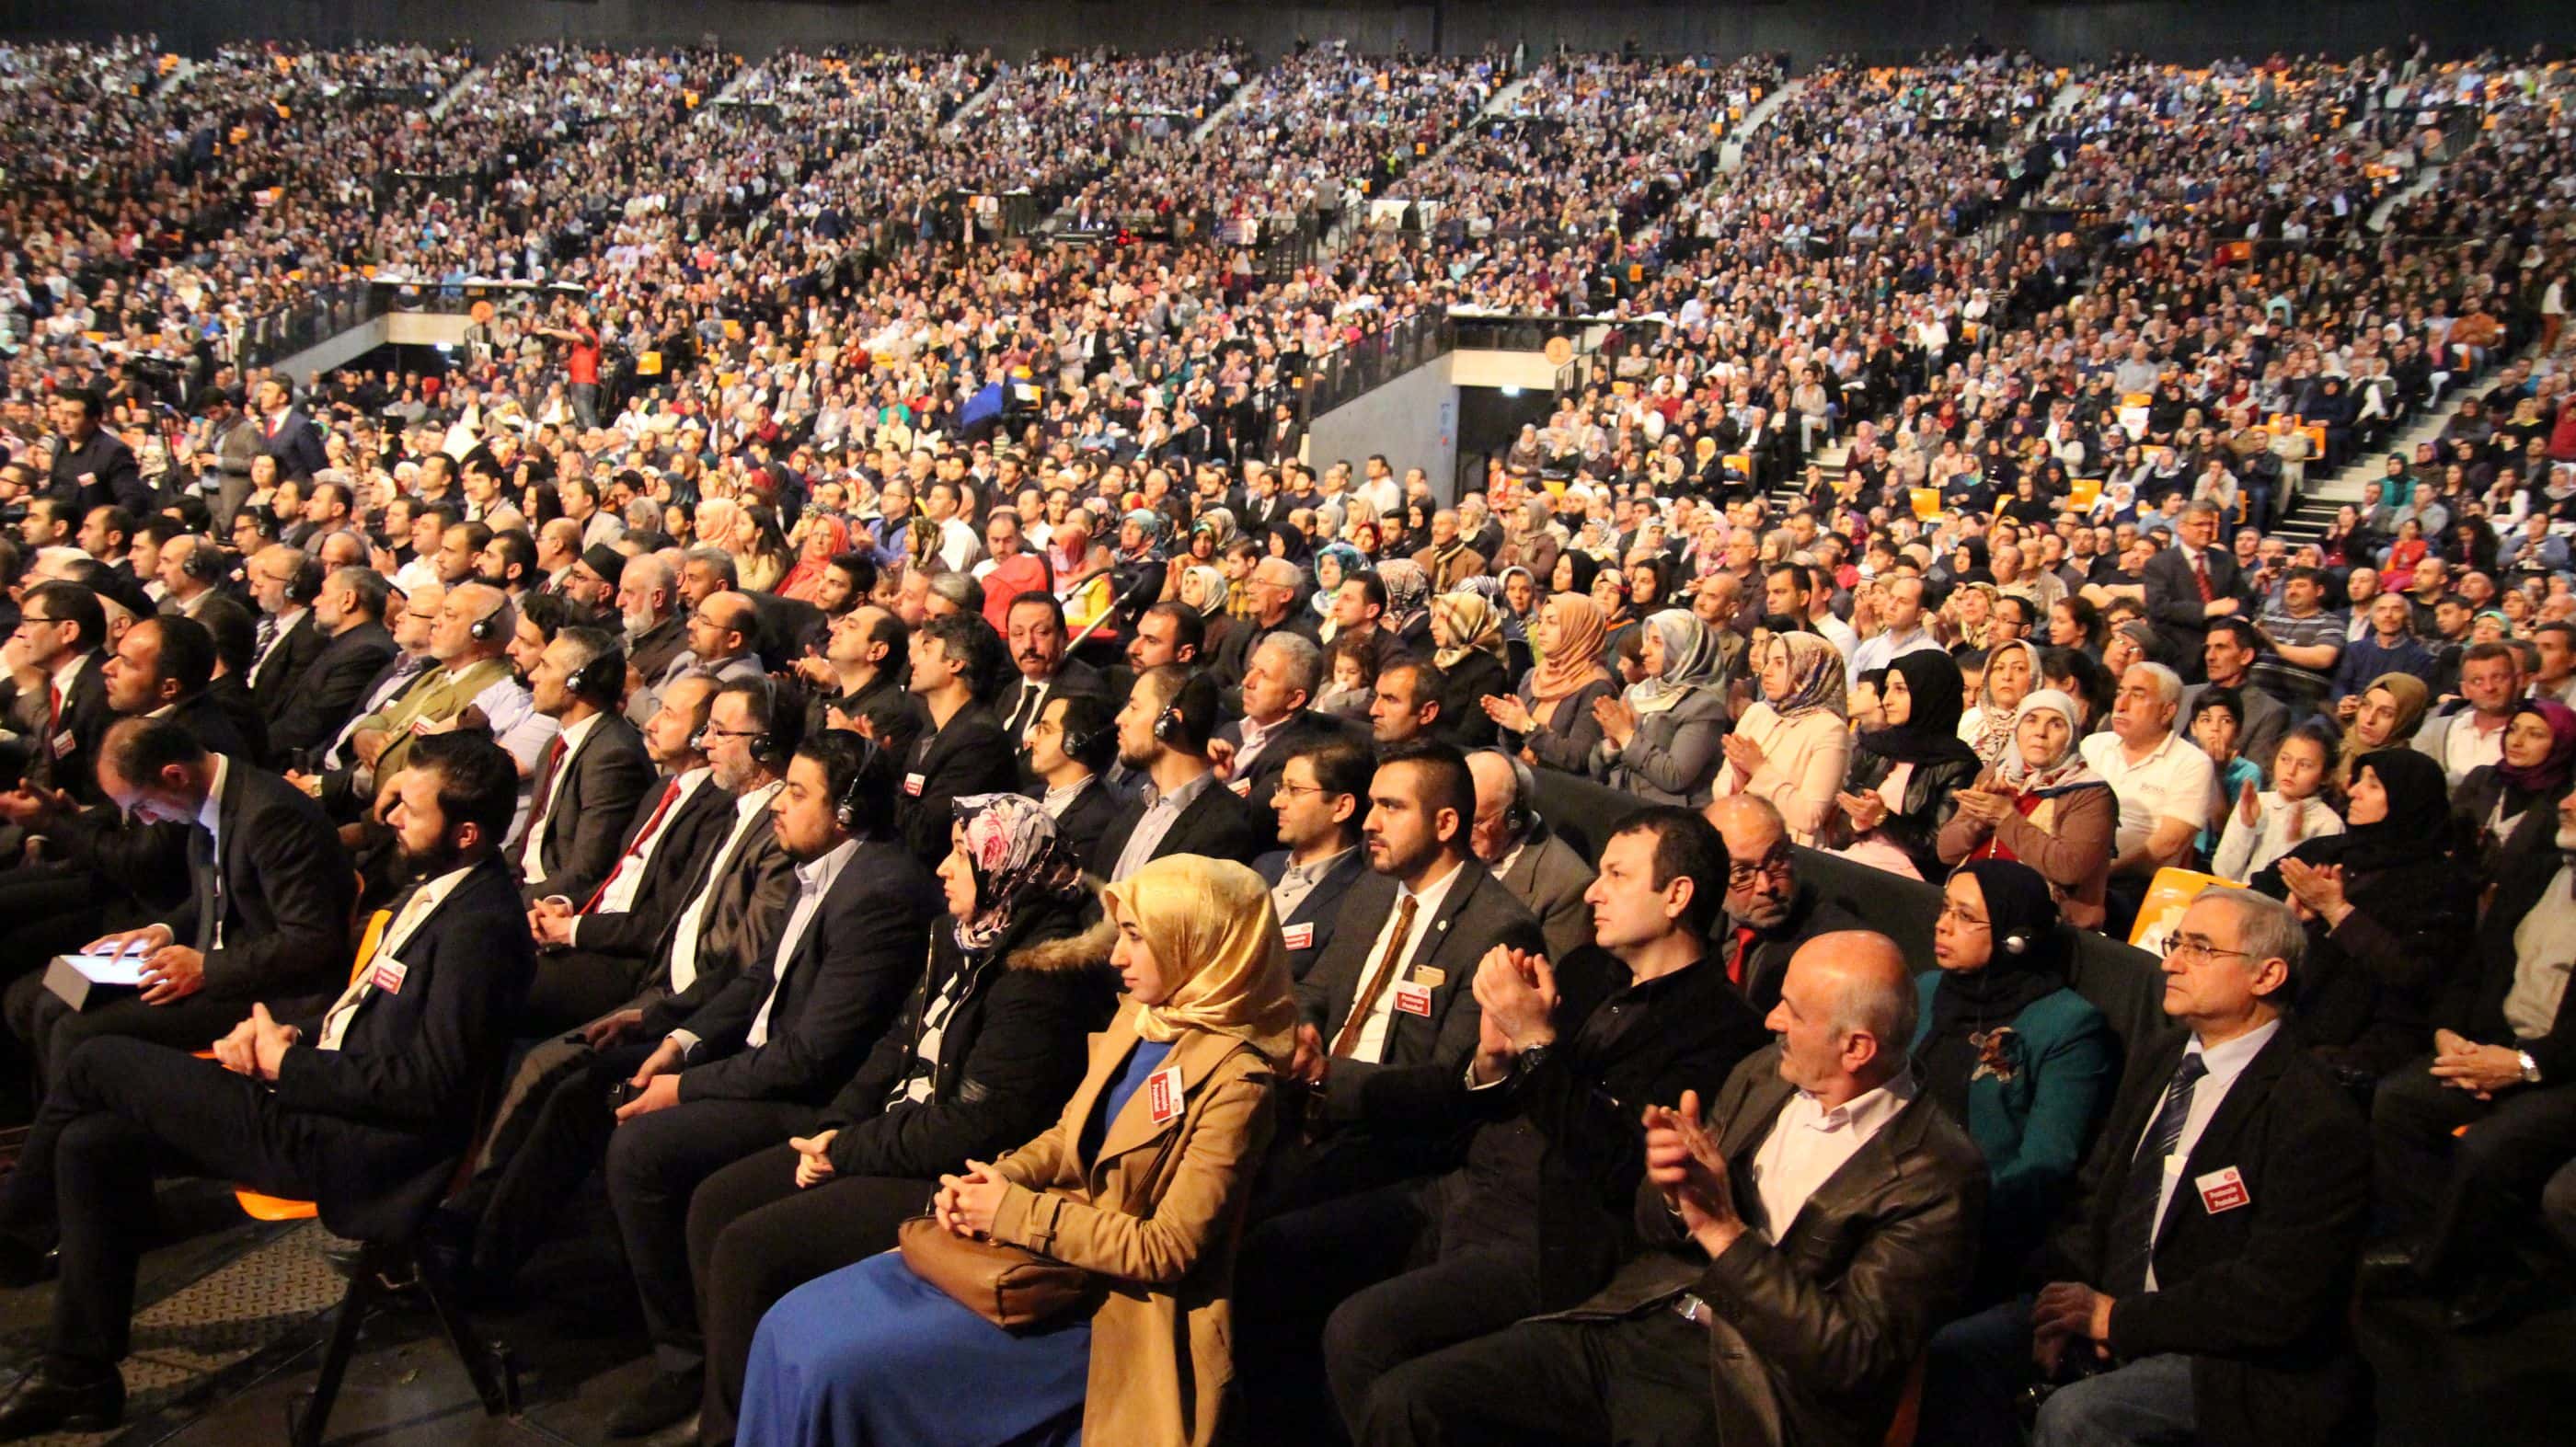 Le grand mufti de Turquie soigne sa diaspora à Strasbourg